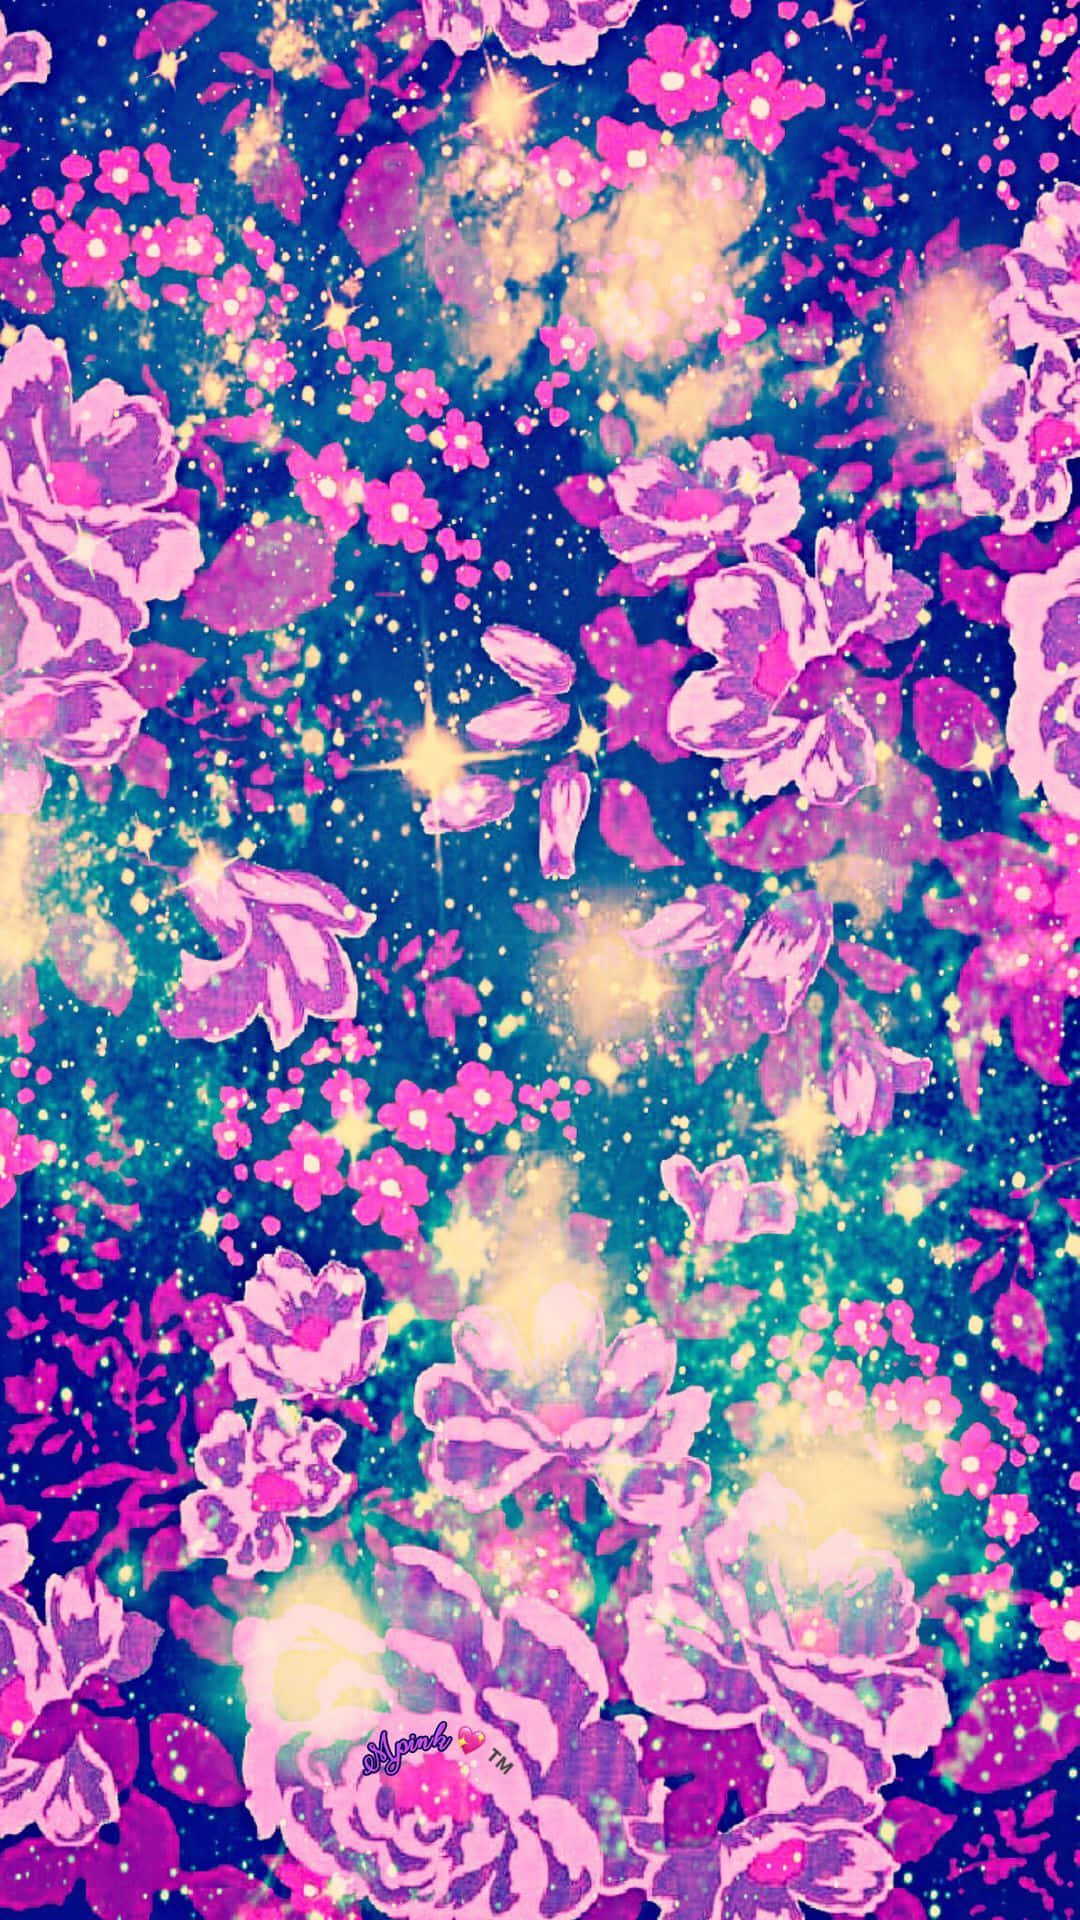 Explore the Glitter Galaxy Wallpaper